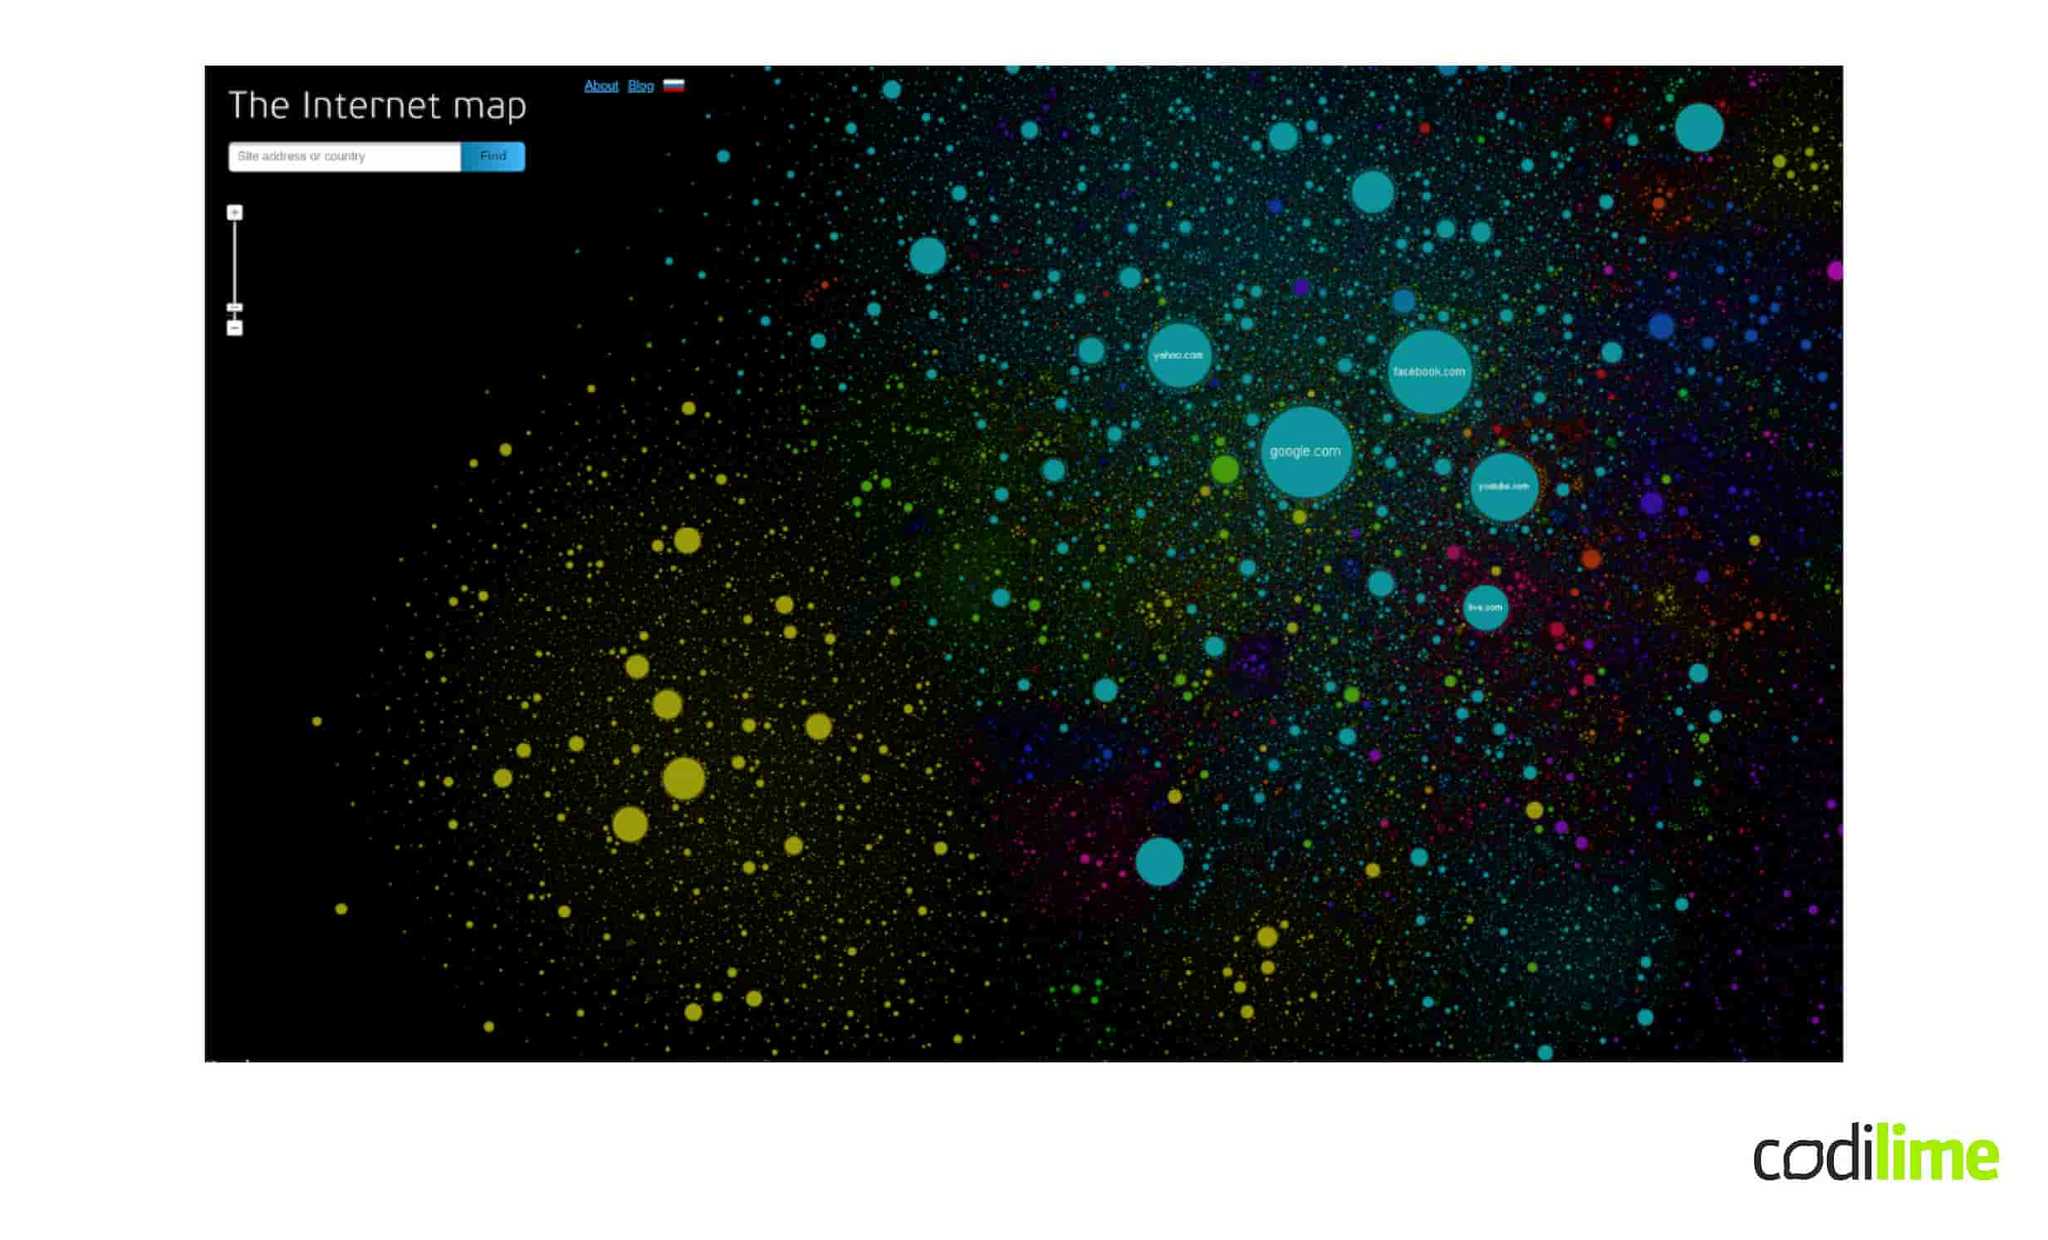 Internet map as a galaxy